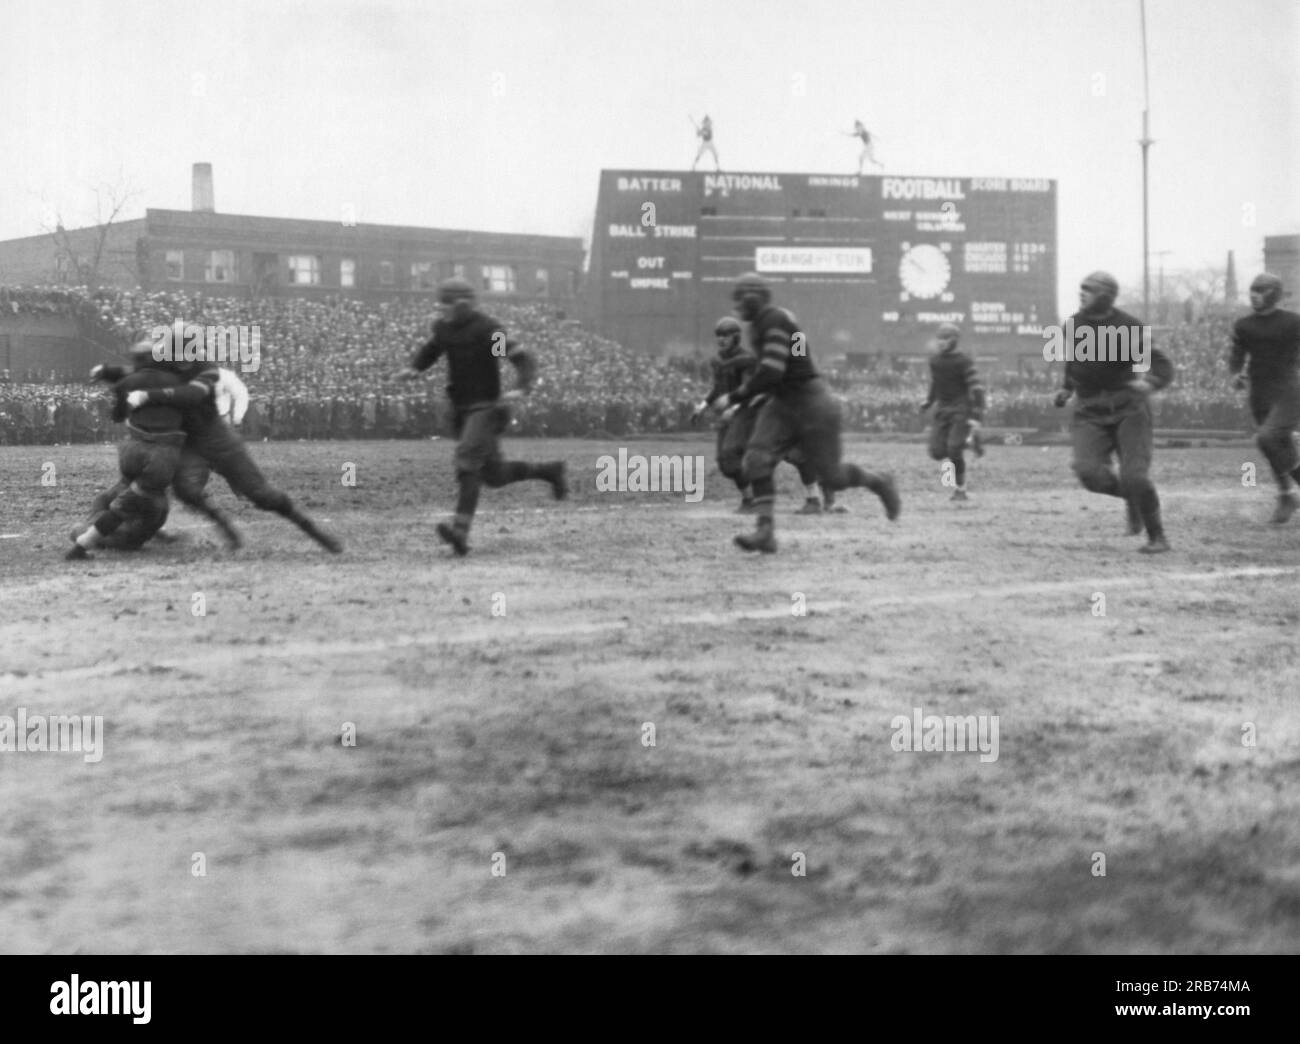 Chicago, Illinois: Il 27 novembre 1925 Rookie Red Grange fu placcato al Cub's Park (poi Wrigley Field) nella sua prima partita da professionista per i Chicago Bears, giocando contro i loro rivali del Southside, i Chicago Cardinals. Grange ricevette per i suoi sforzi la somma di 12.000 dollari e un occhio nero. Foto Stock